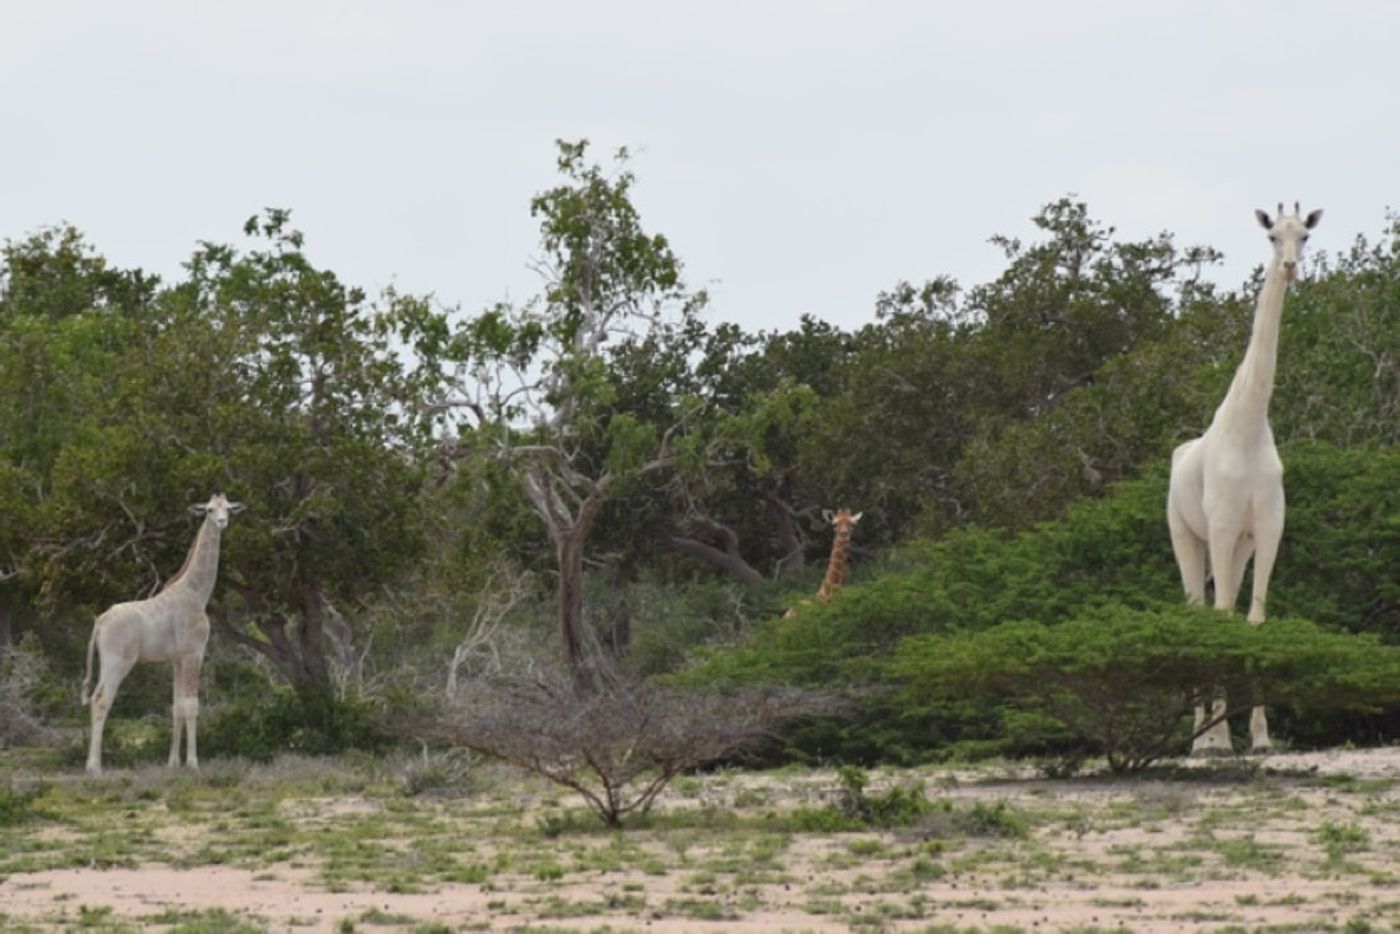 Two white giraffes from Kenya in 2017.